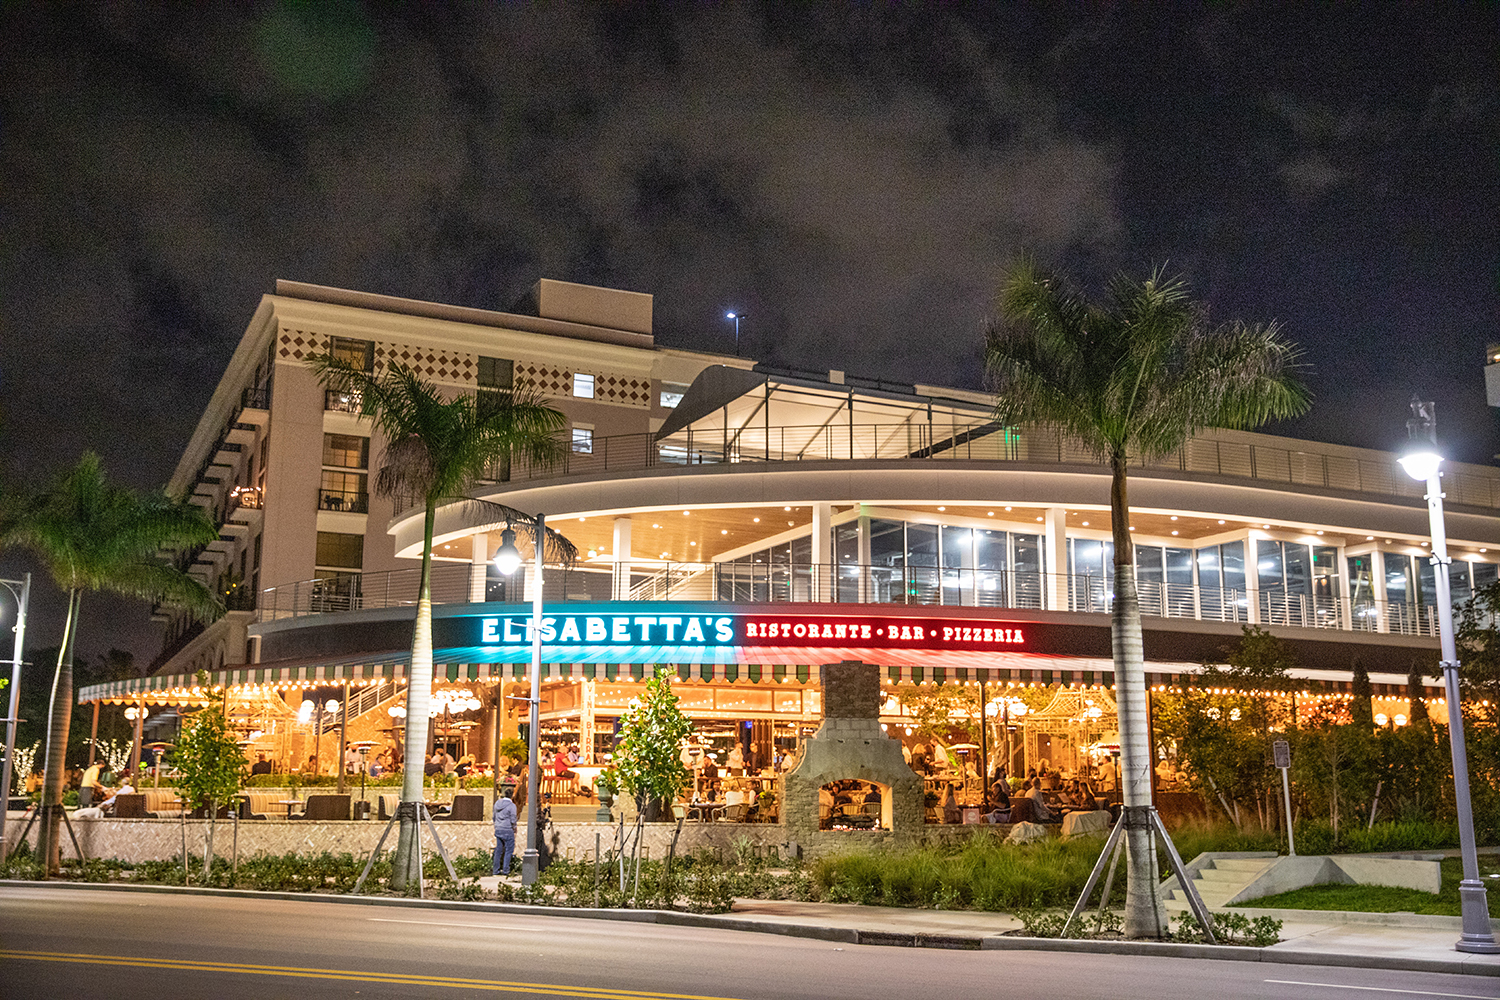 Elisabetta's West Palm Beach